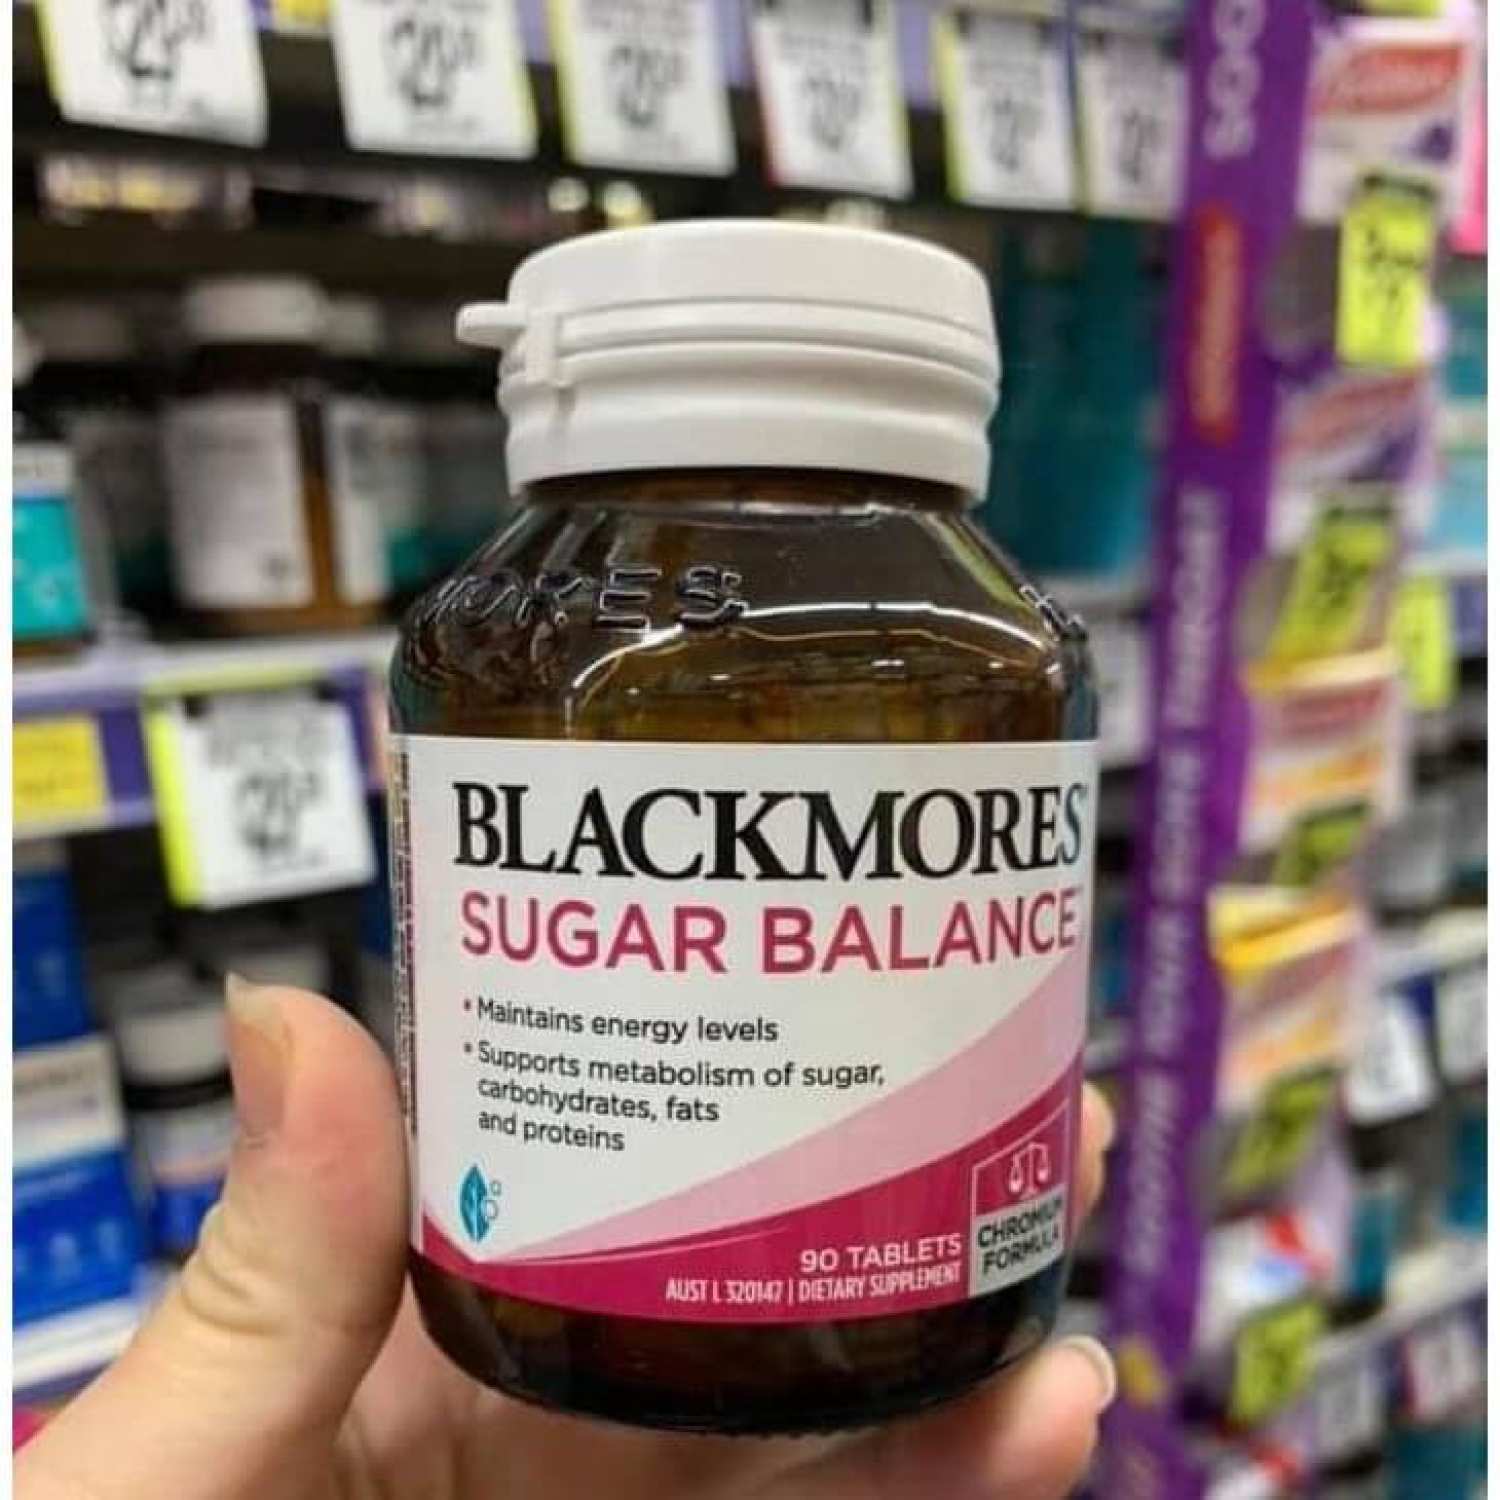 Blackmores Sugar Balance 90v viên cân bằng đường huyết dành cho người tiểu